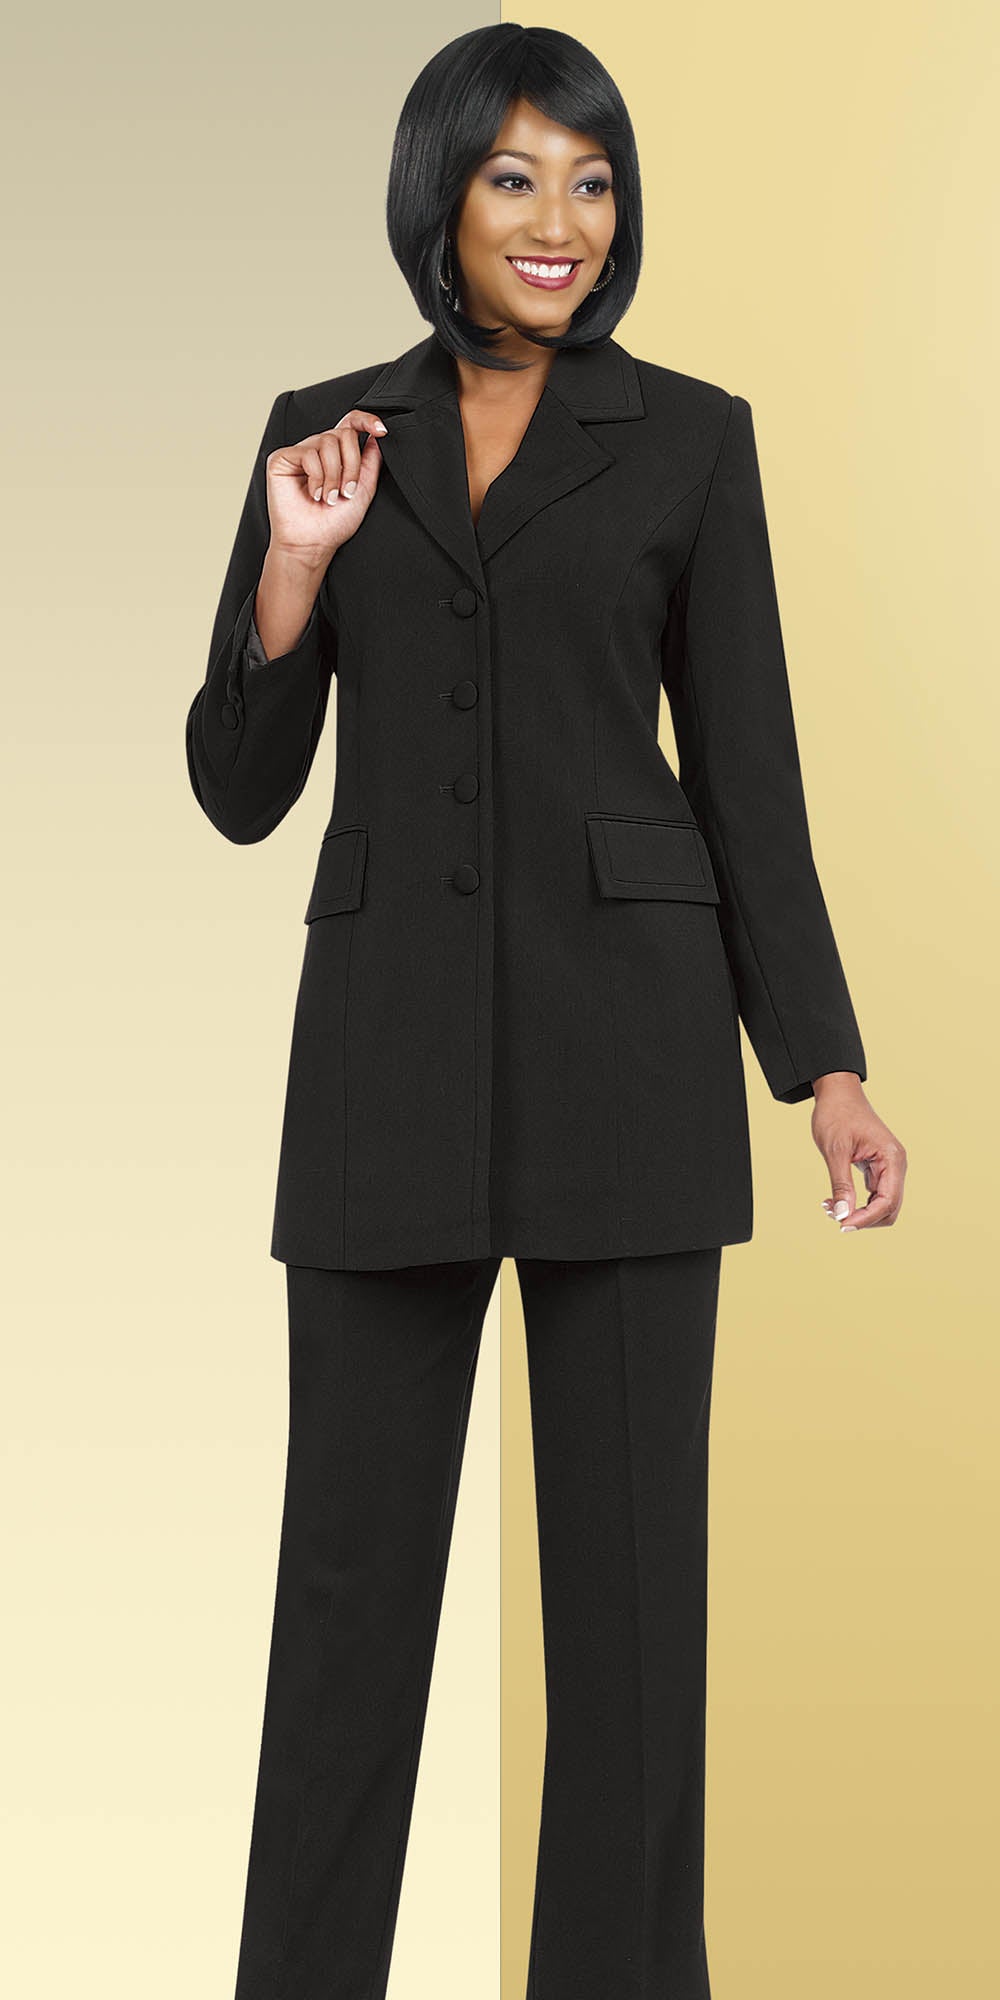 Ben Marc Executive 10496-Black- Womens Pant Suit Business Uniform